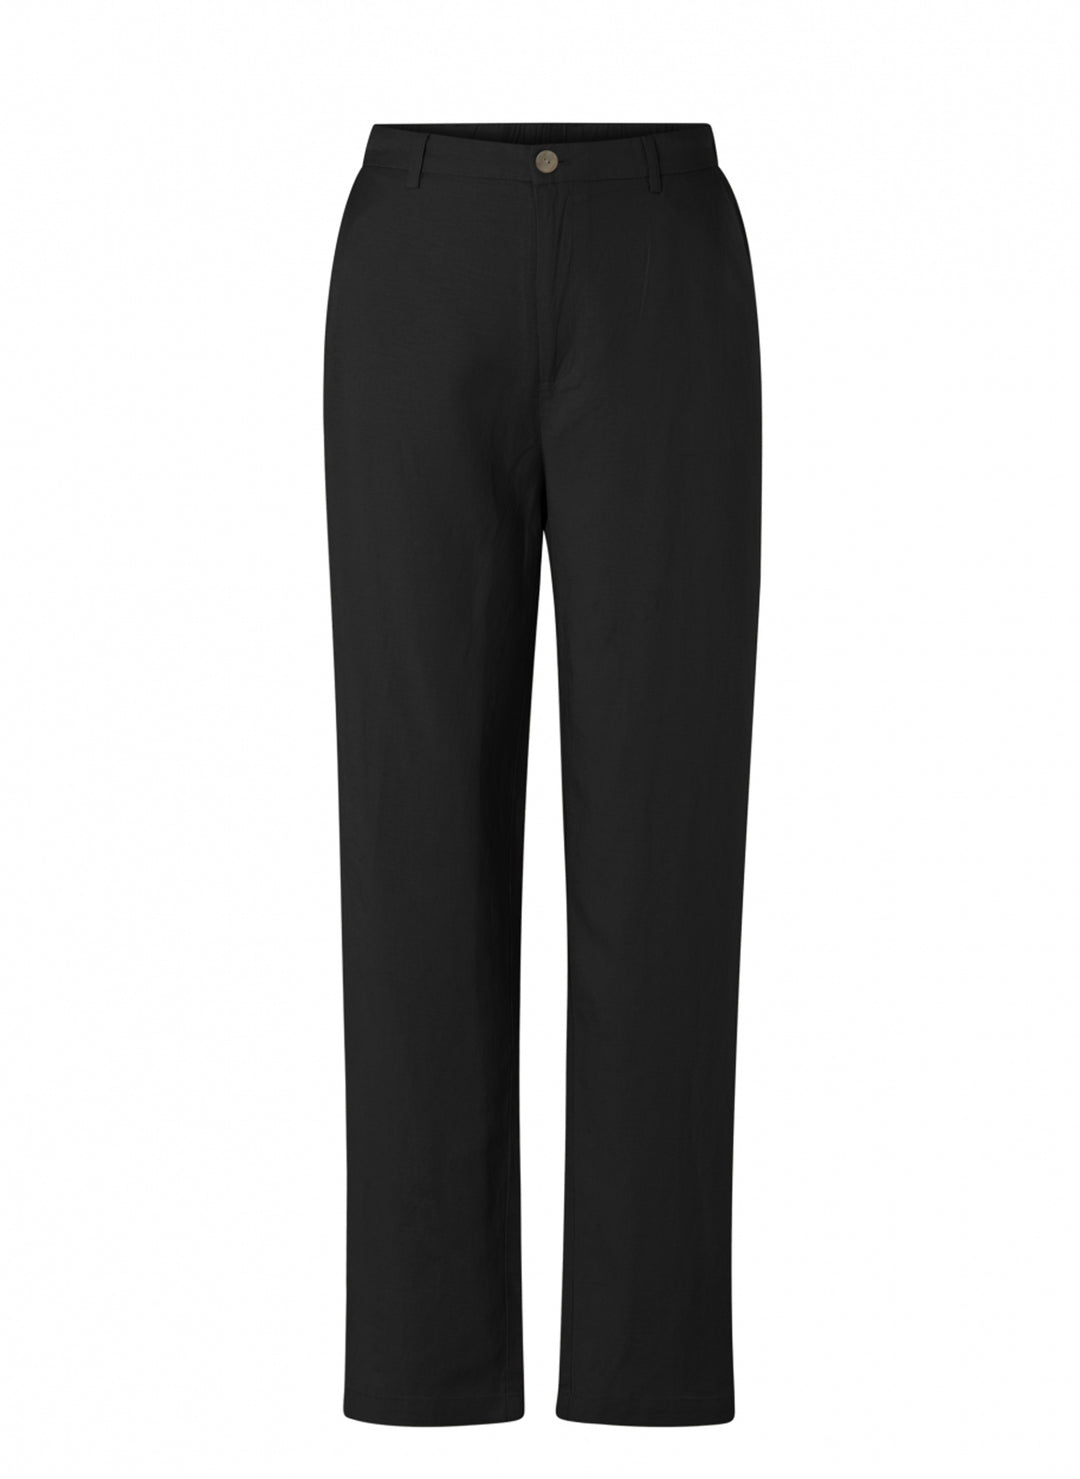 lange zwarte broek - yesta - - grote maten - dameskleding - kledingwinkel - herent - leuven